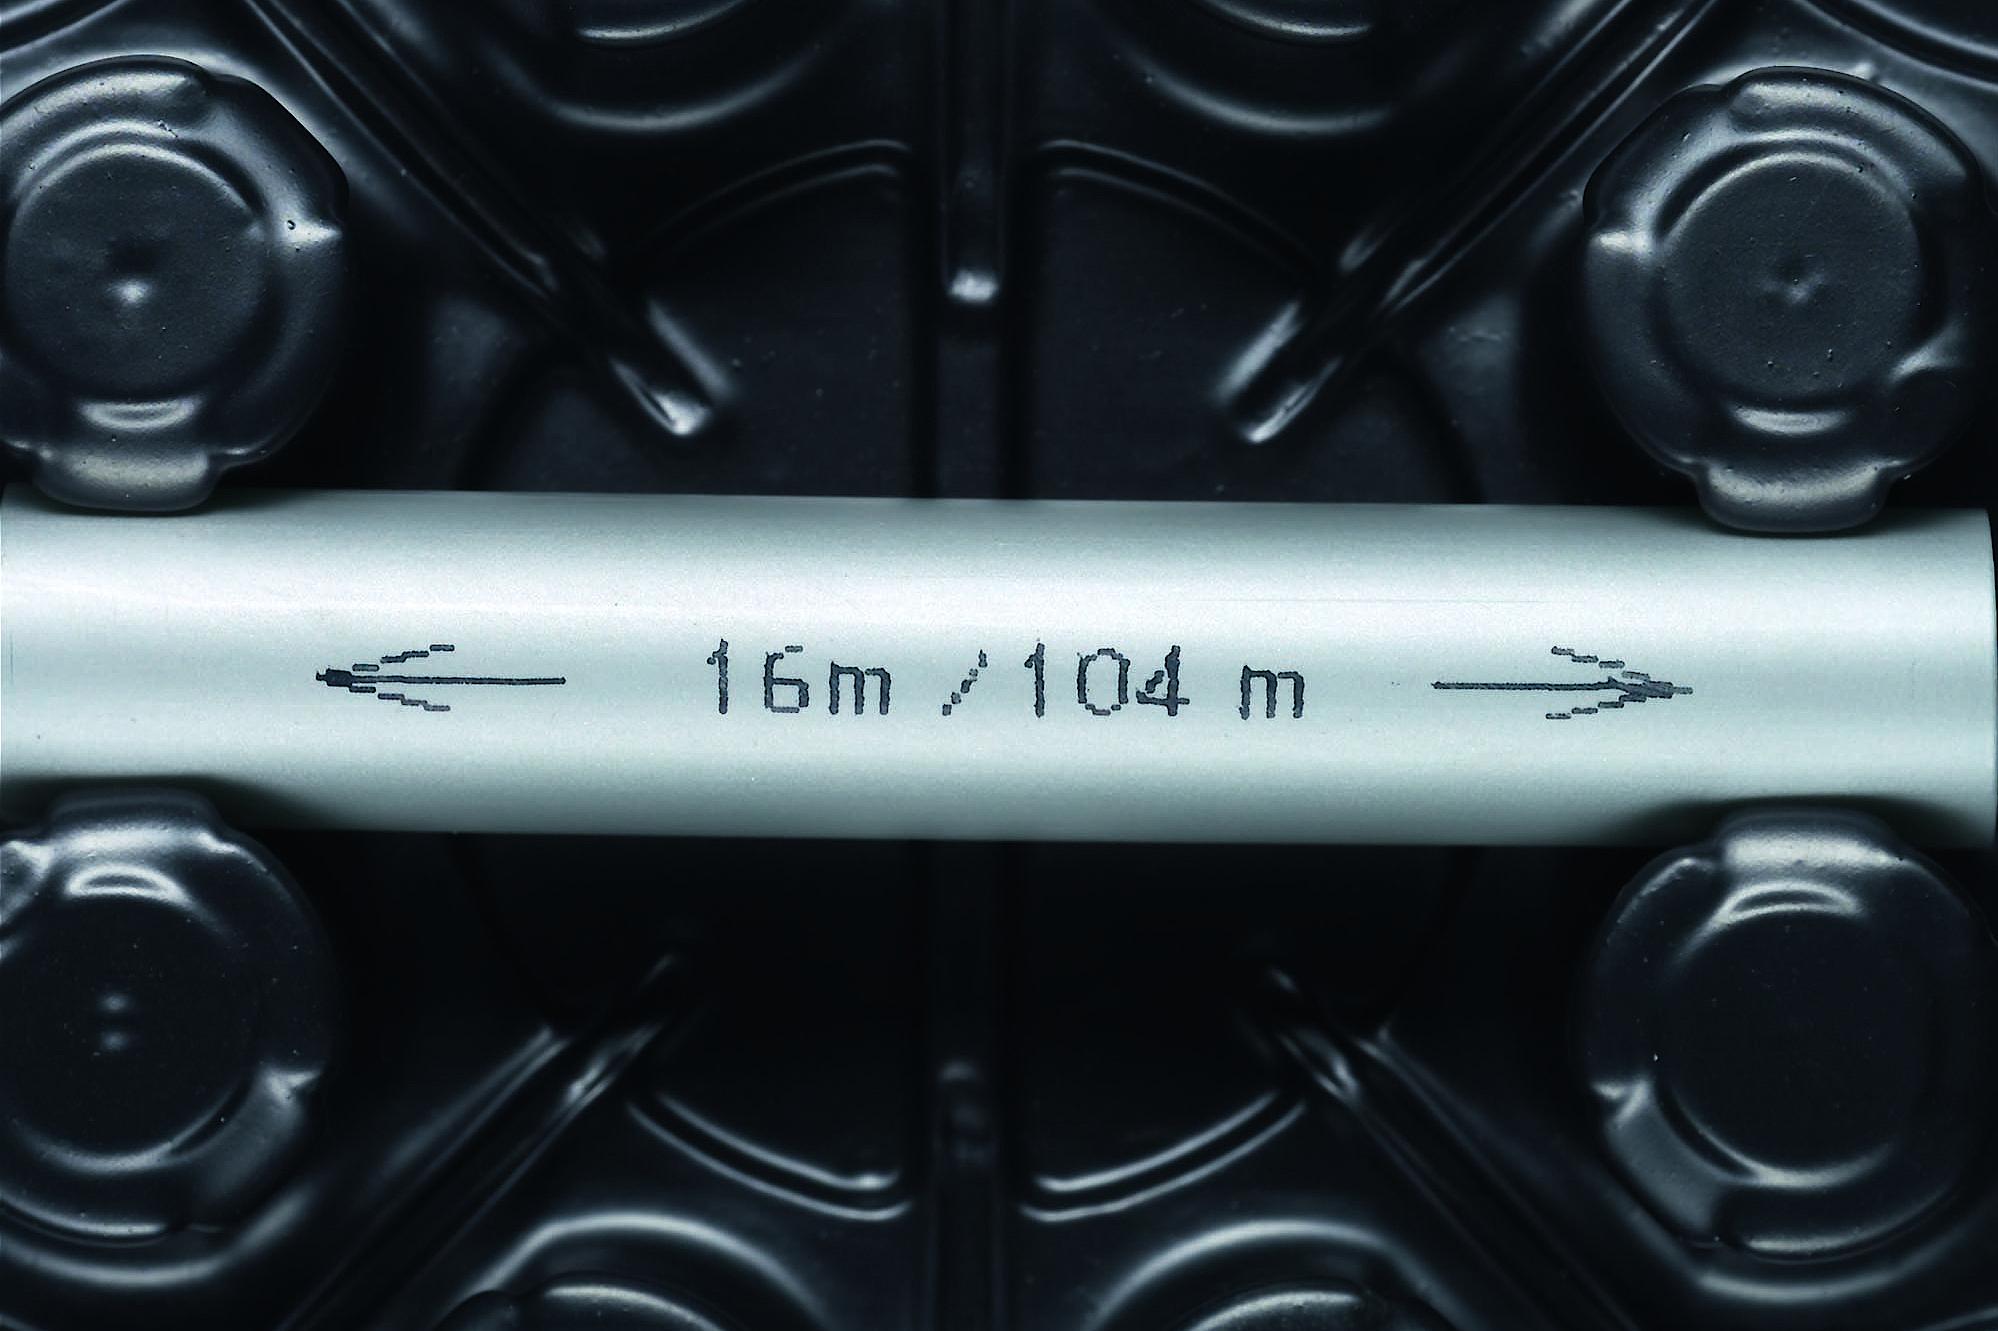 Kermi x-net a 5 strati PE-Xc marchiatura del tubo con indicazione della lunghezza restante e della quantità di tubo già utilizzata per un utilizzo ottimale dei rotoli.